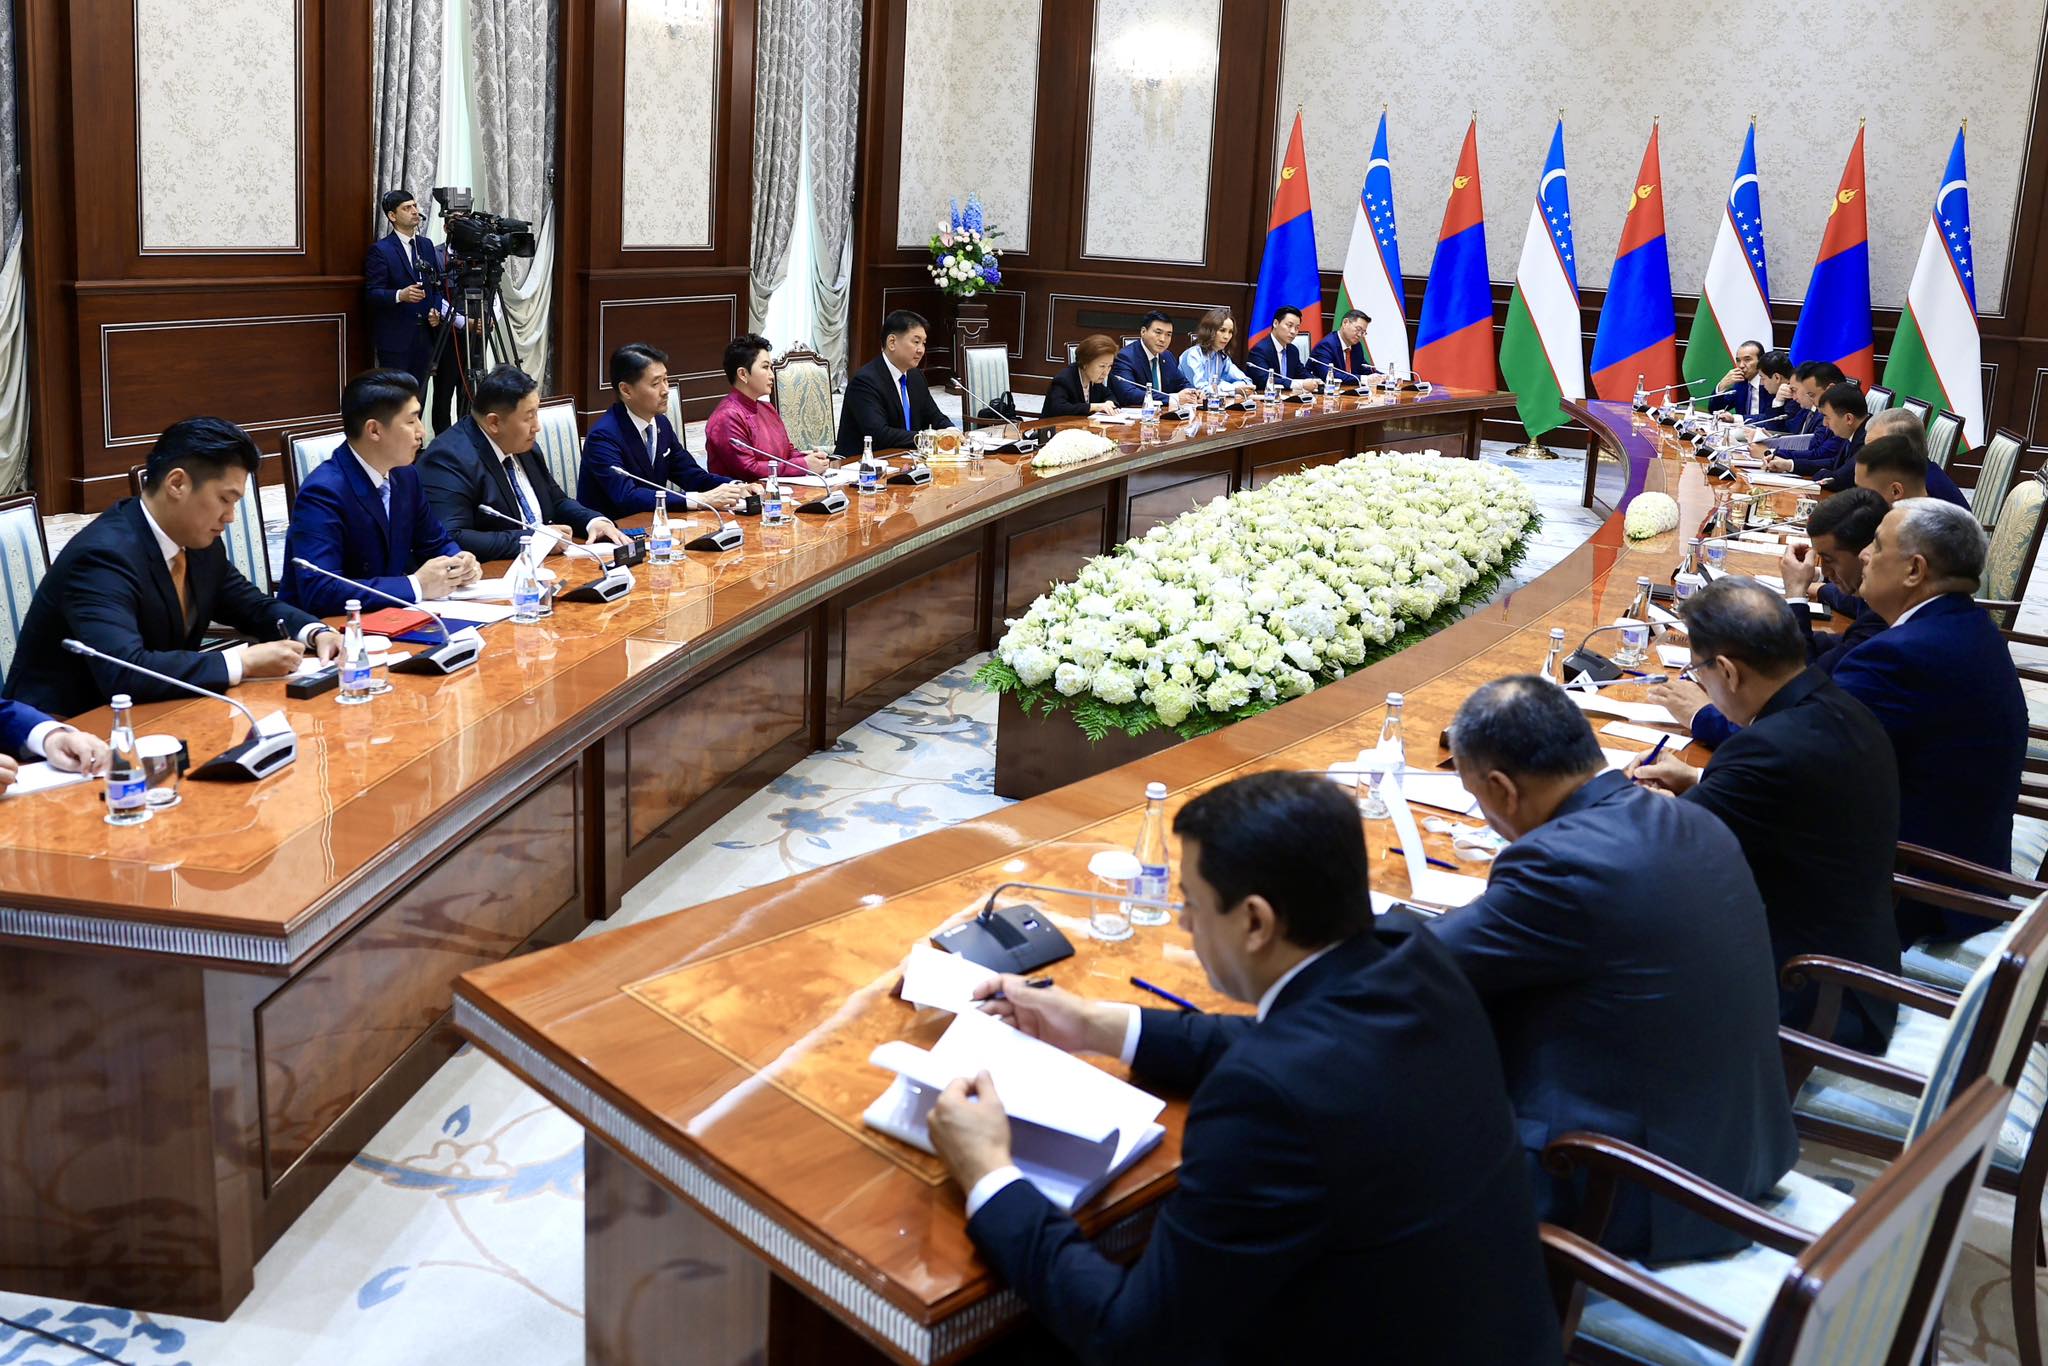 Монгол Улсын Ерөнхийлөгч У.Хүрэлсүх, Бүгд Найрамдах Узбекистан Улсын Ерөнхийлөгч Ш.Мирзиёев нар албан ёсны хэлэлцээ хийлээ